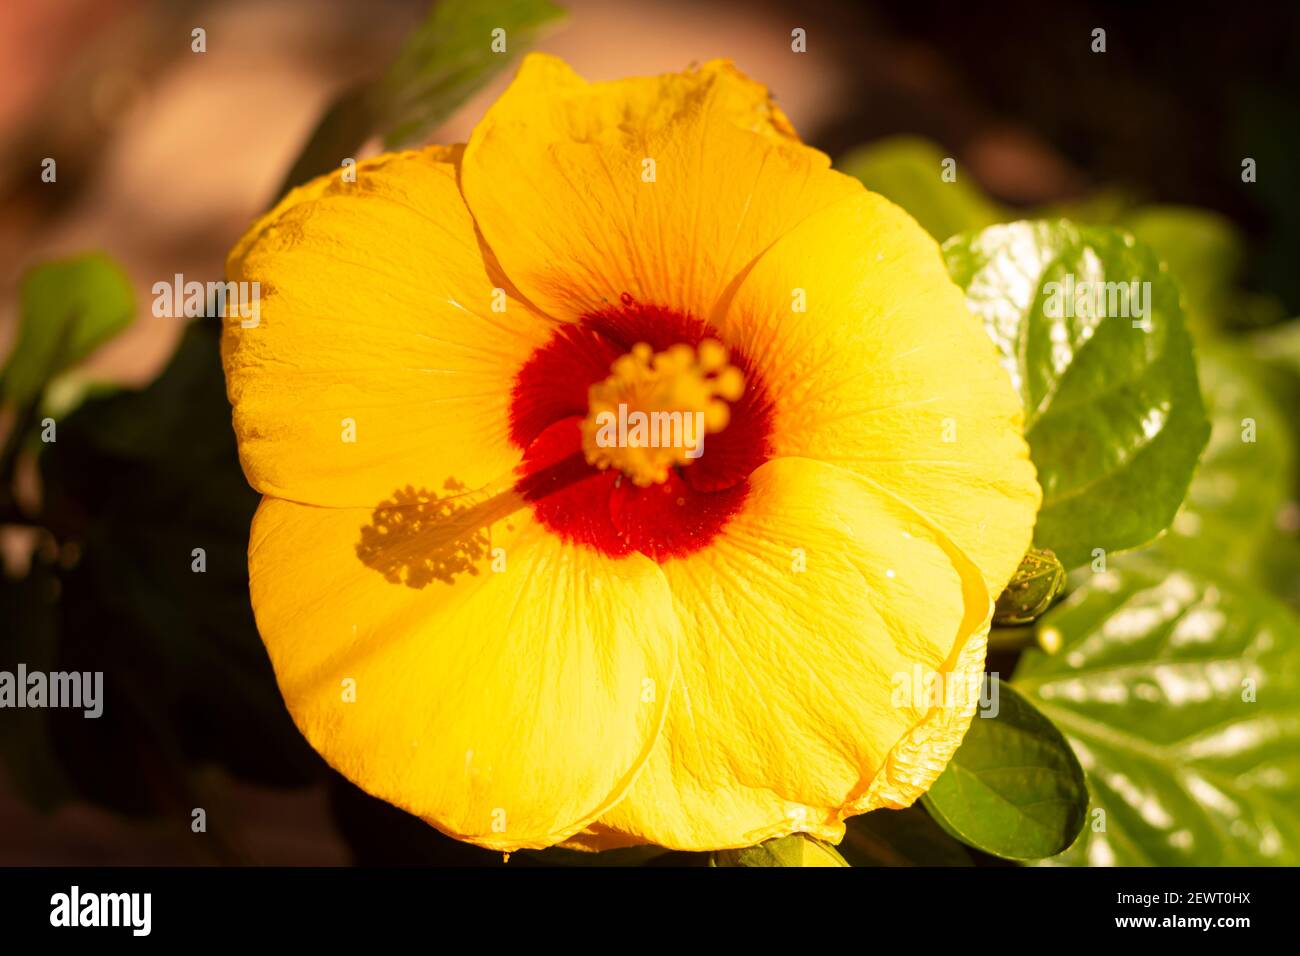 Flor del estado de hawai fotografías e imágenes de alta resolución - Alamy